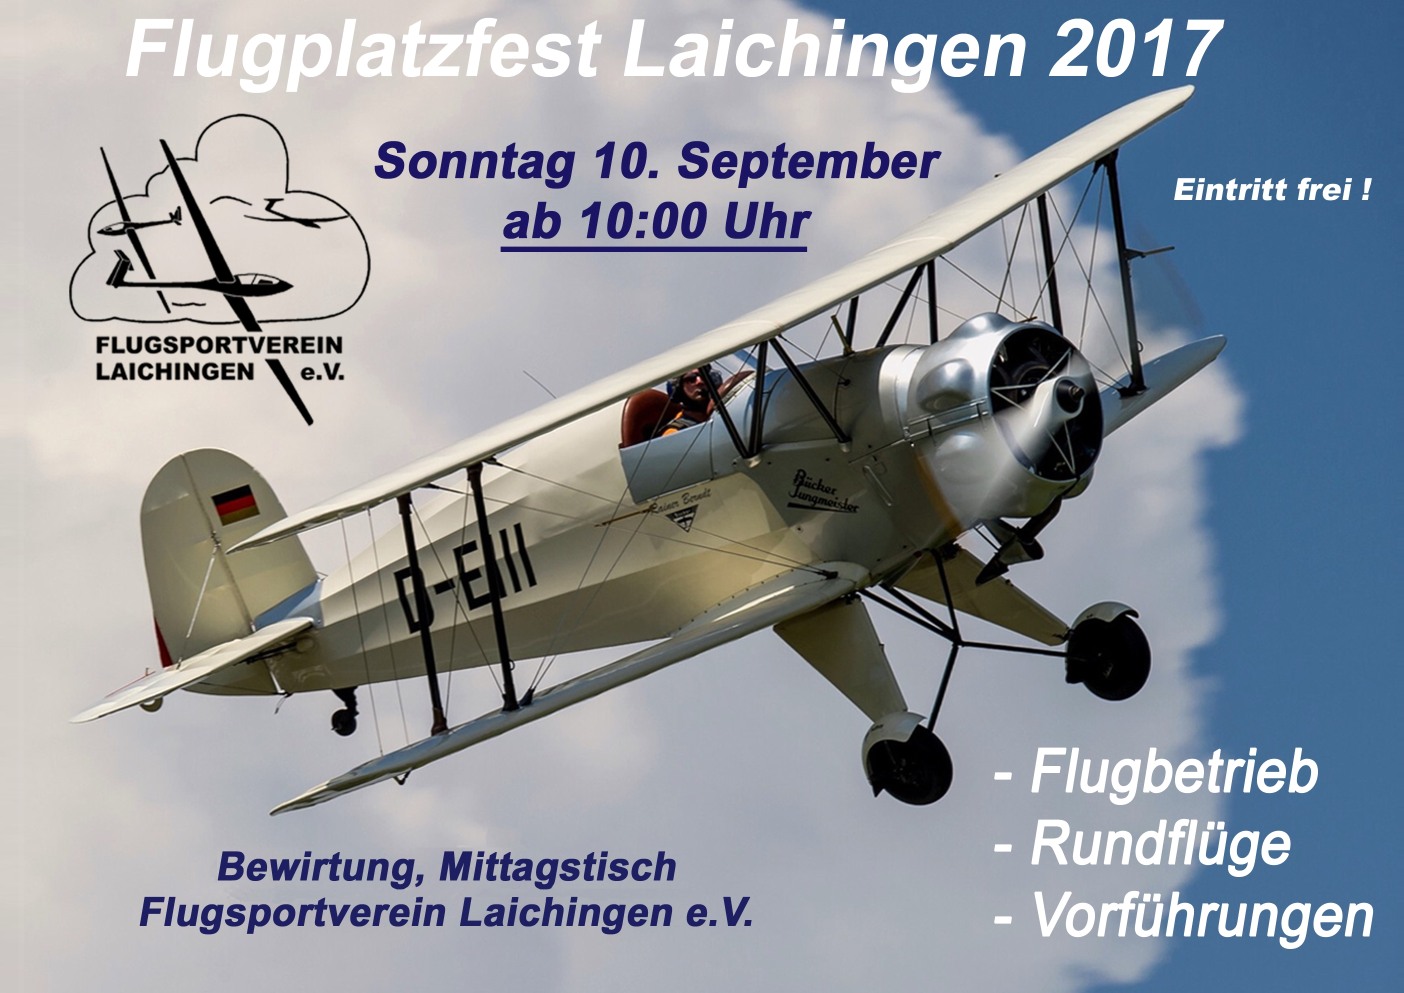 Flugplatzfest Laichingen 2017